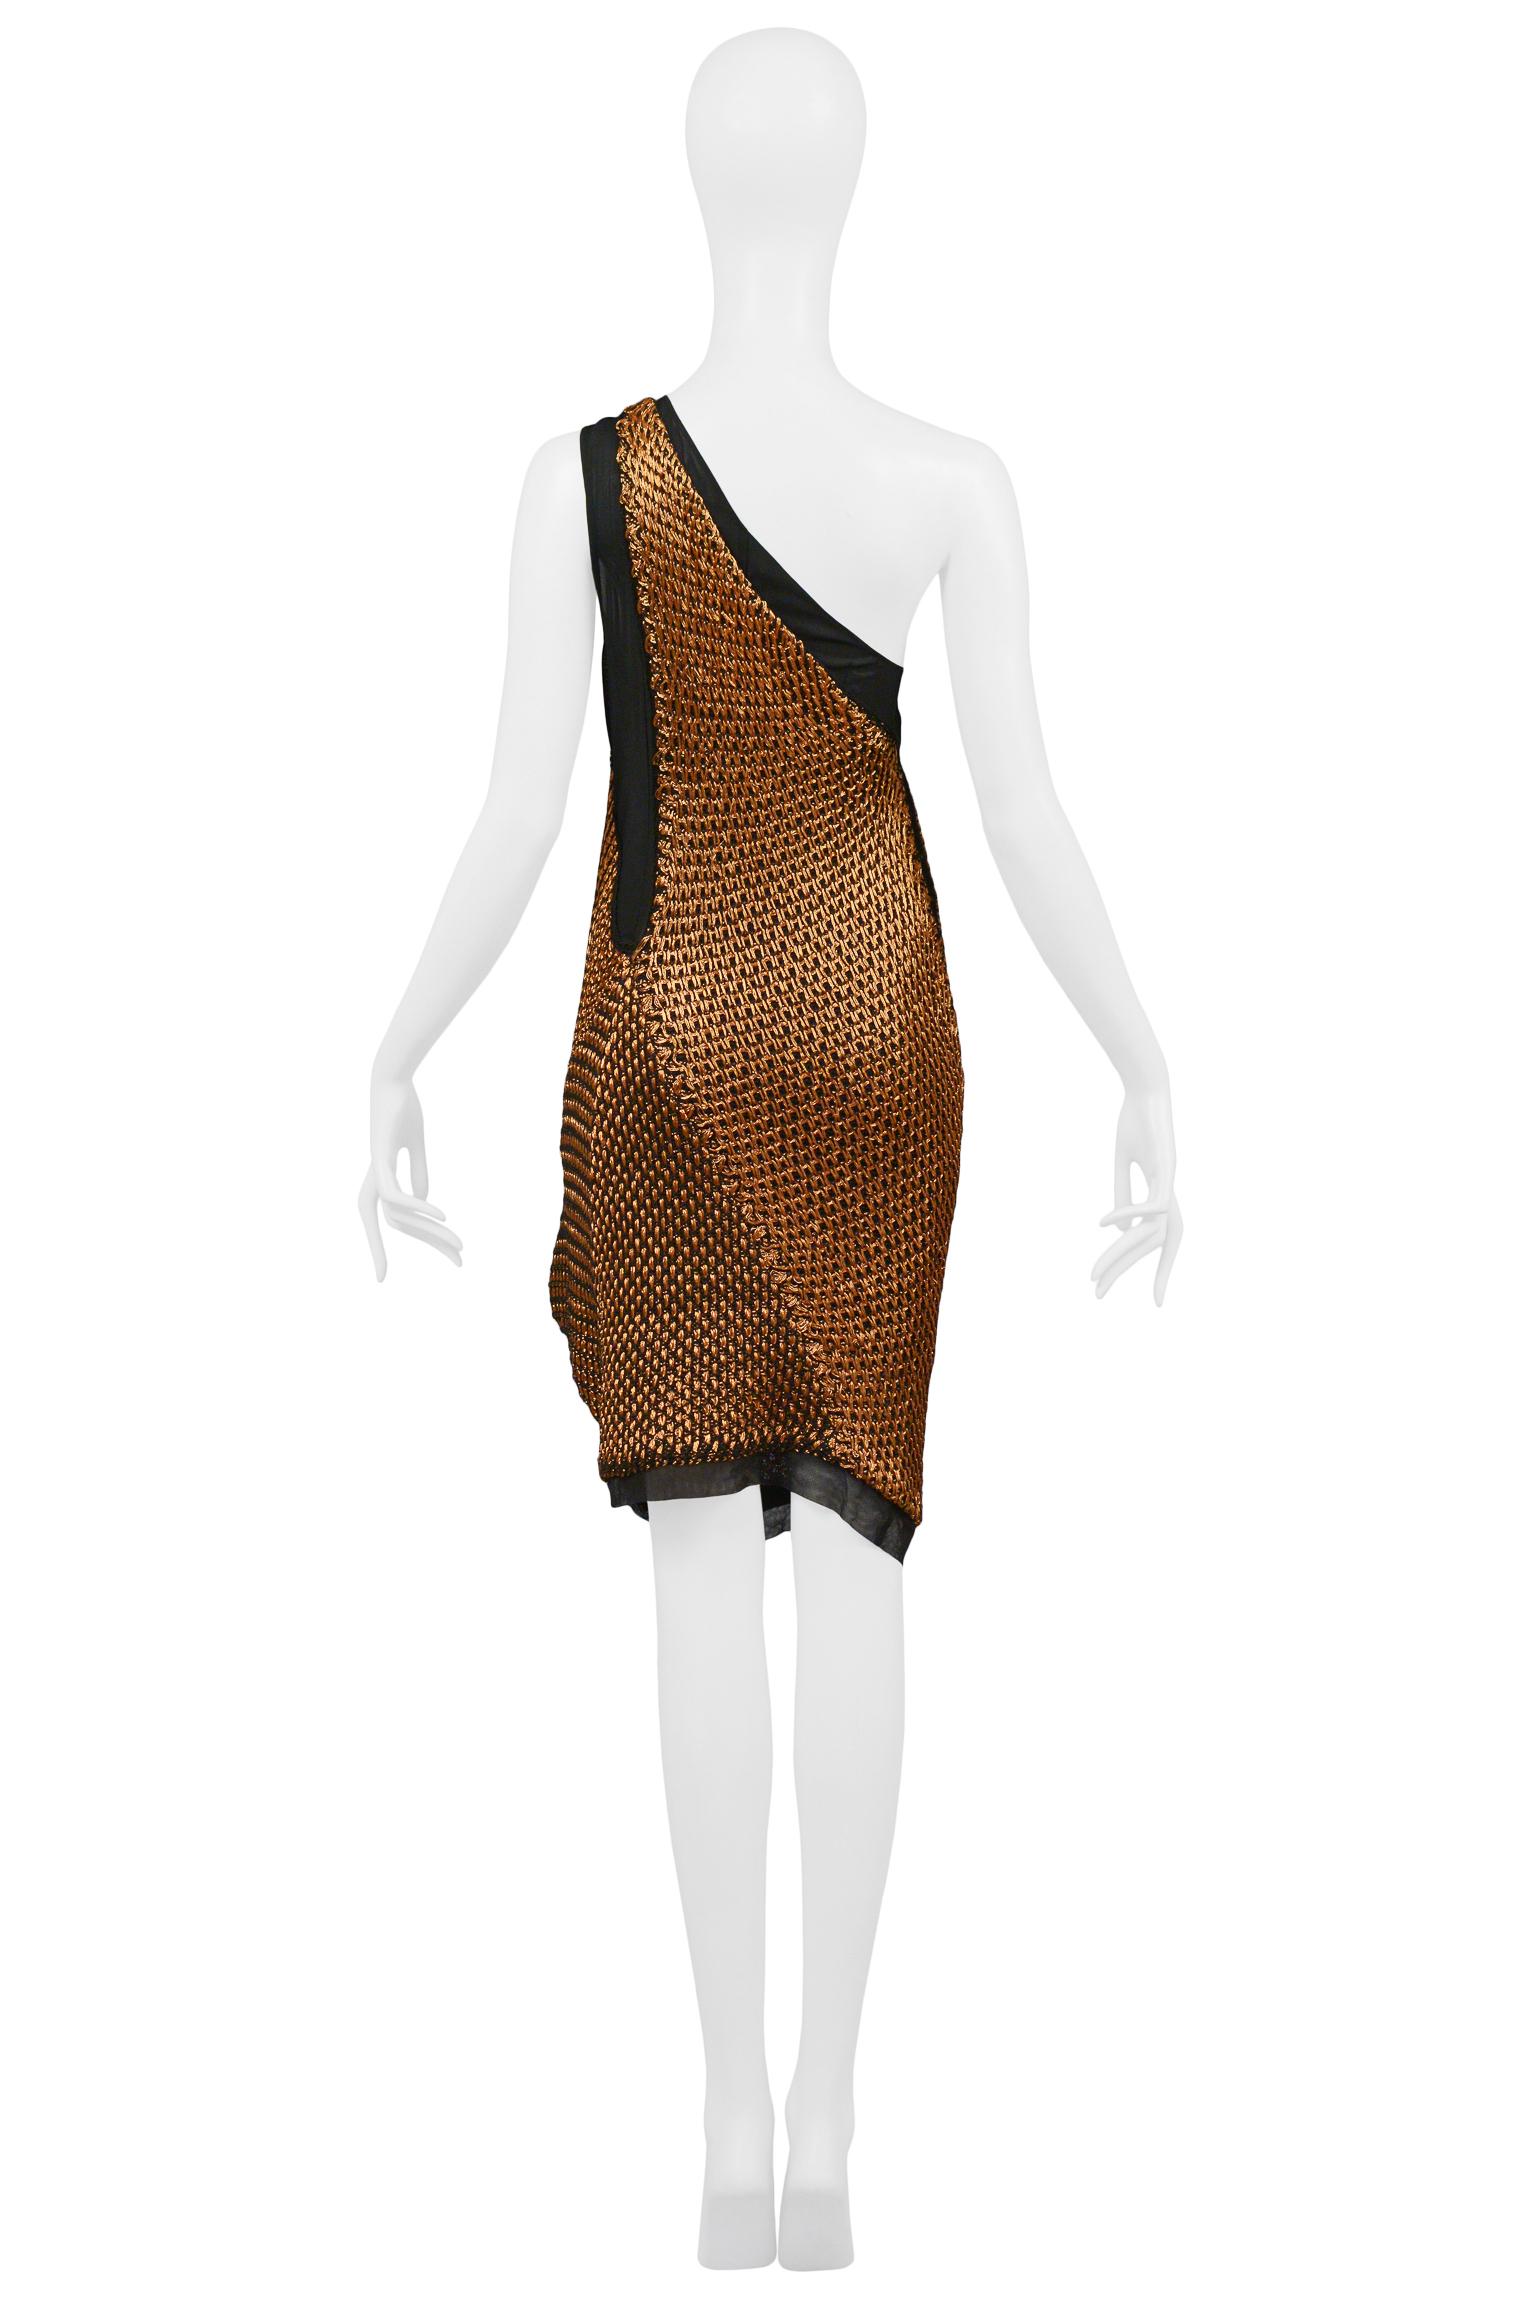 Balenciaga By Nicolas Ghesquiere Copper Wire Crochet Dress 2007 For Sale 1